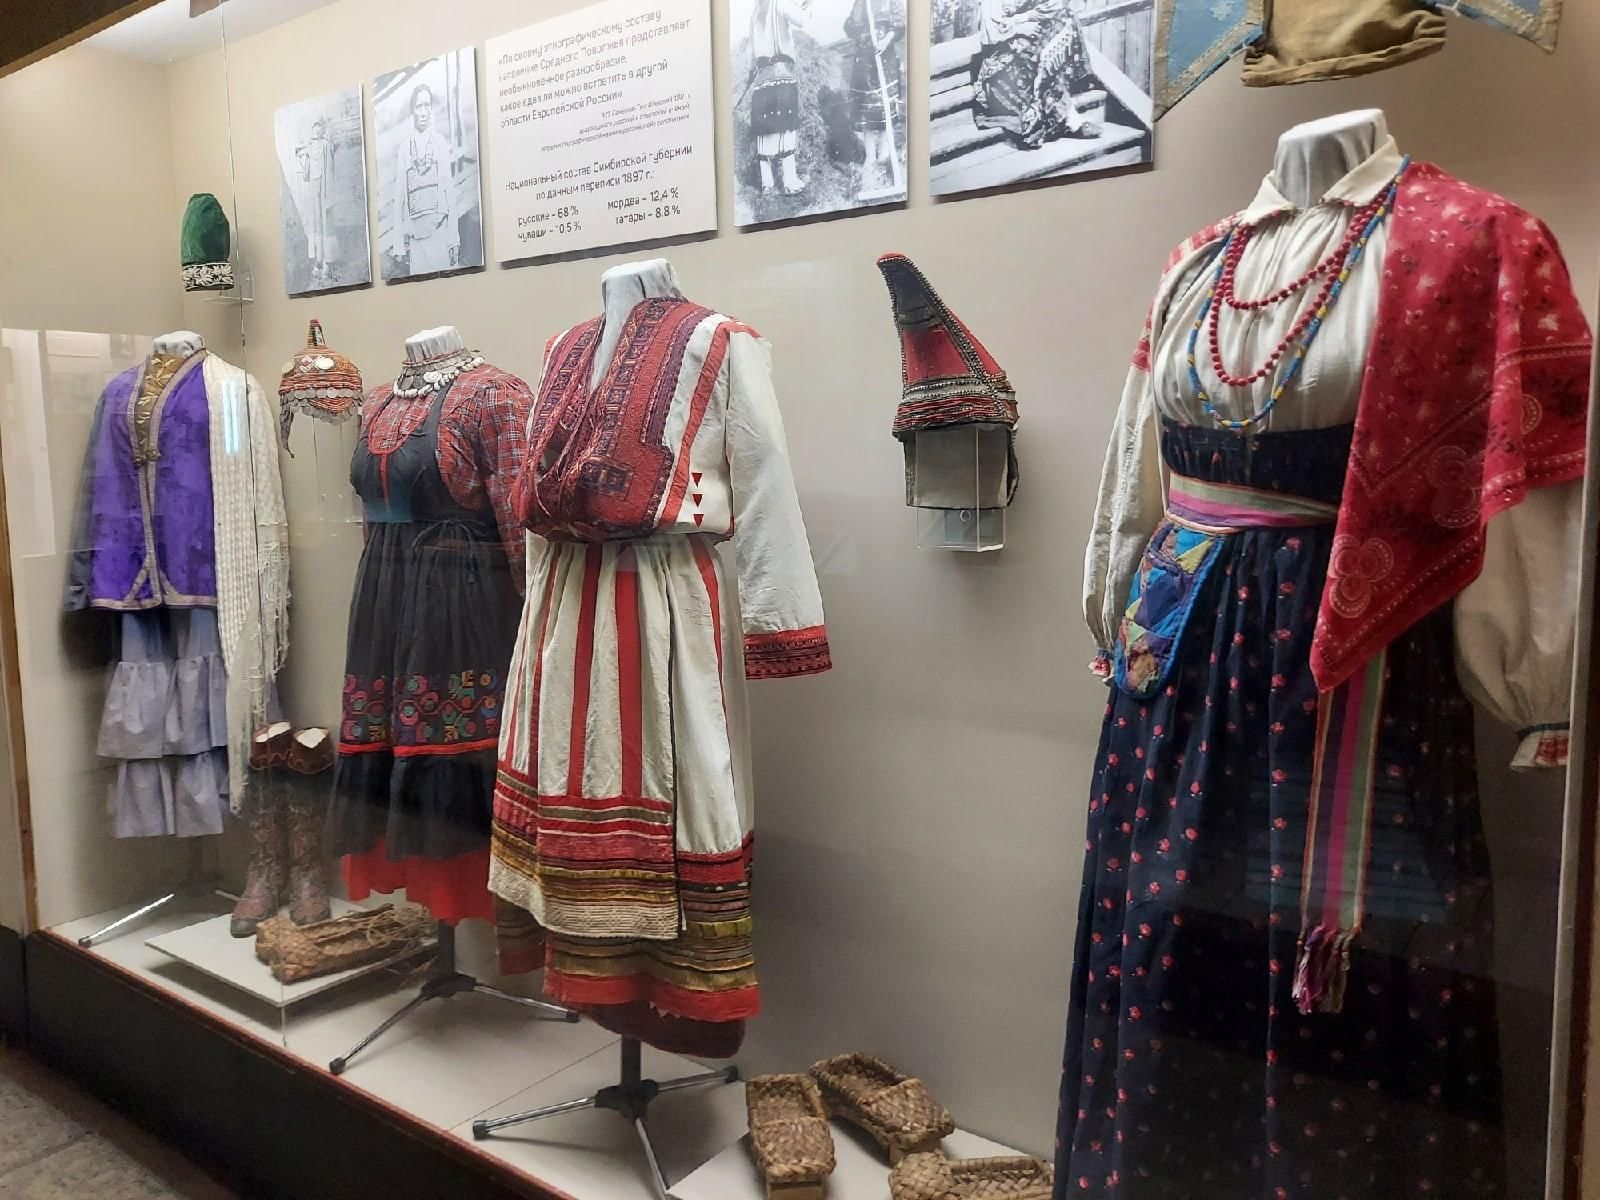 Традиционные костюмы народов поволжья татарский